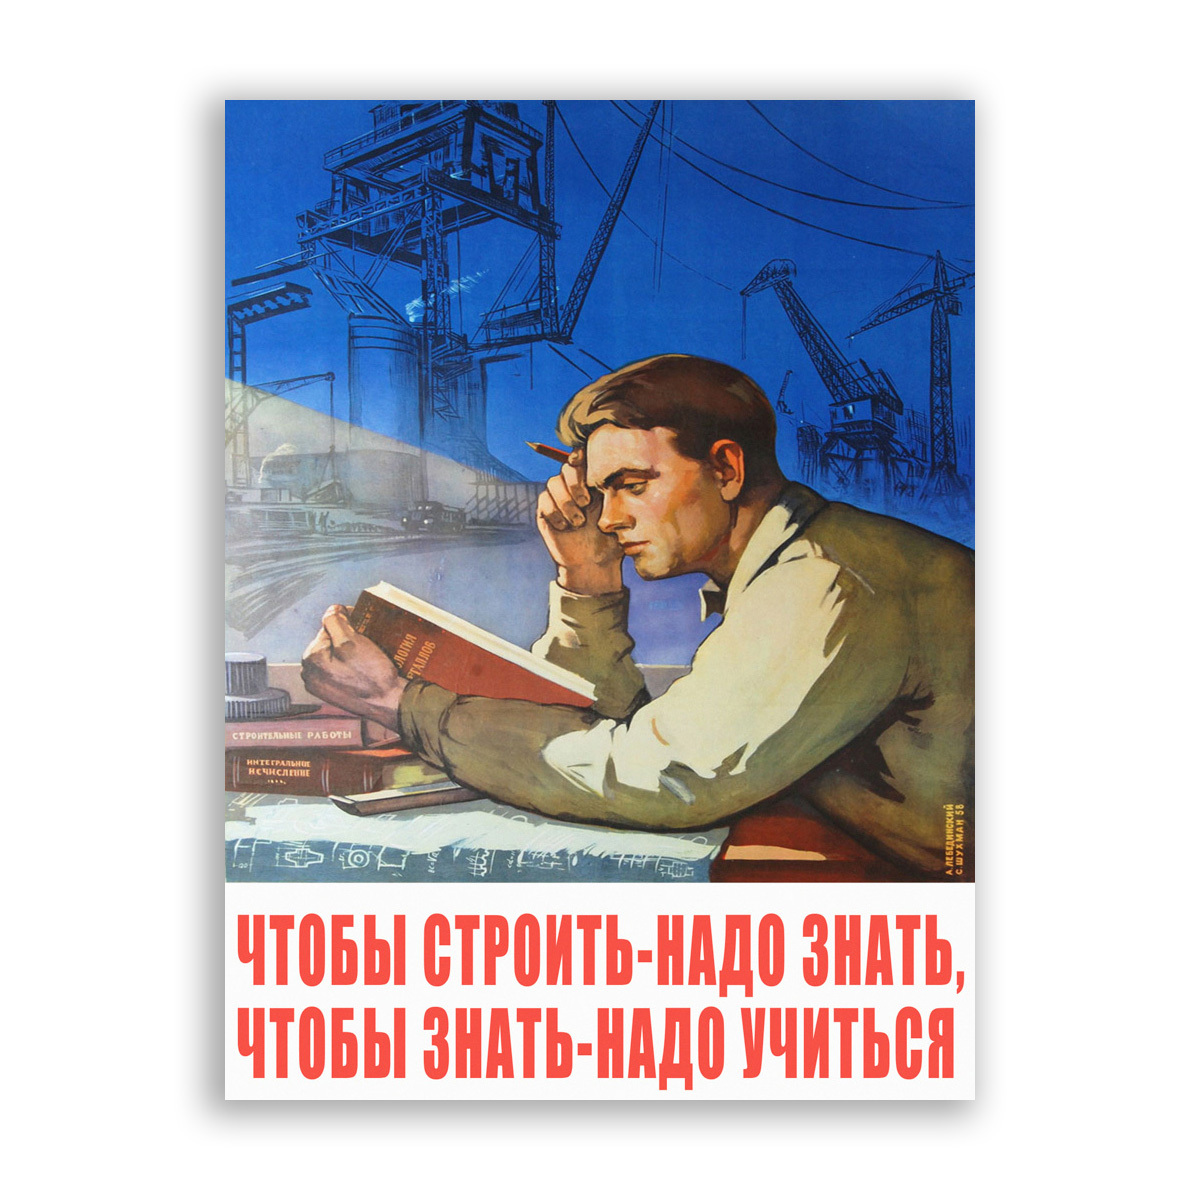 Строим быстро плакат. Советские плакаты чтобы строить надо знать. Чтобы строить надо знать чтобы знать надо учиться. Советские плакаты Мотивационные. Постер чтобы строить надо знать.